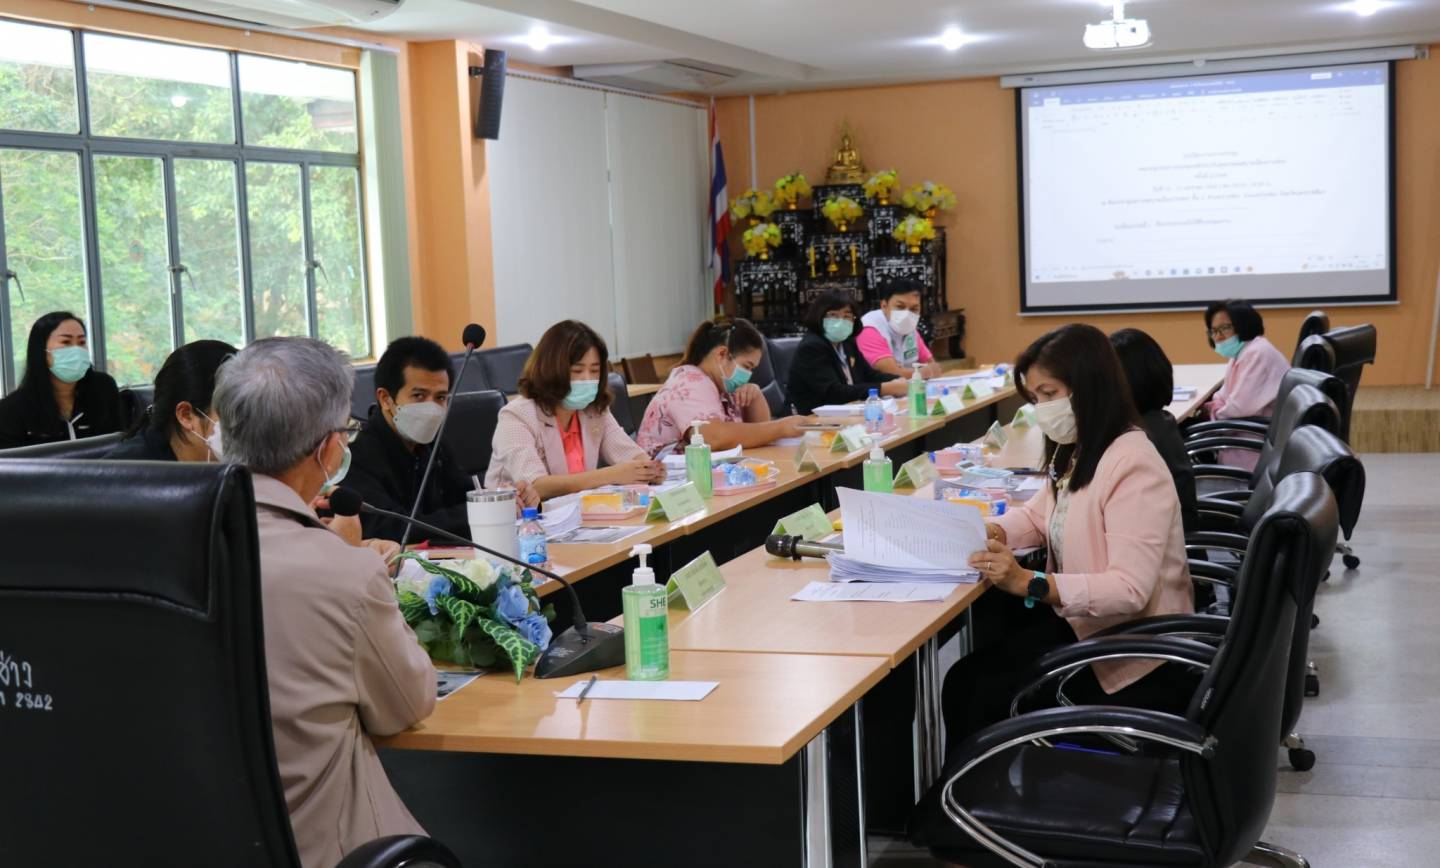 ประชุมคณะอนุกรรมการกองทุนหลักประกันสุขภาพเทศบาลเมืองปากช่อง ครั้งที่ 2/2566